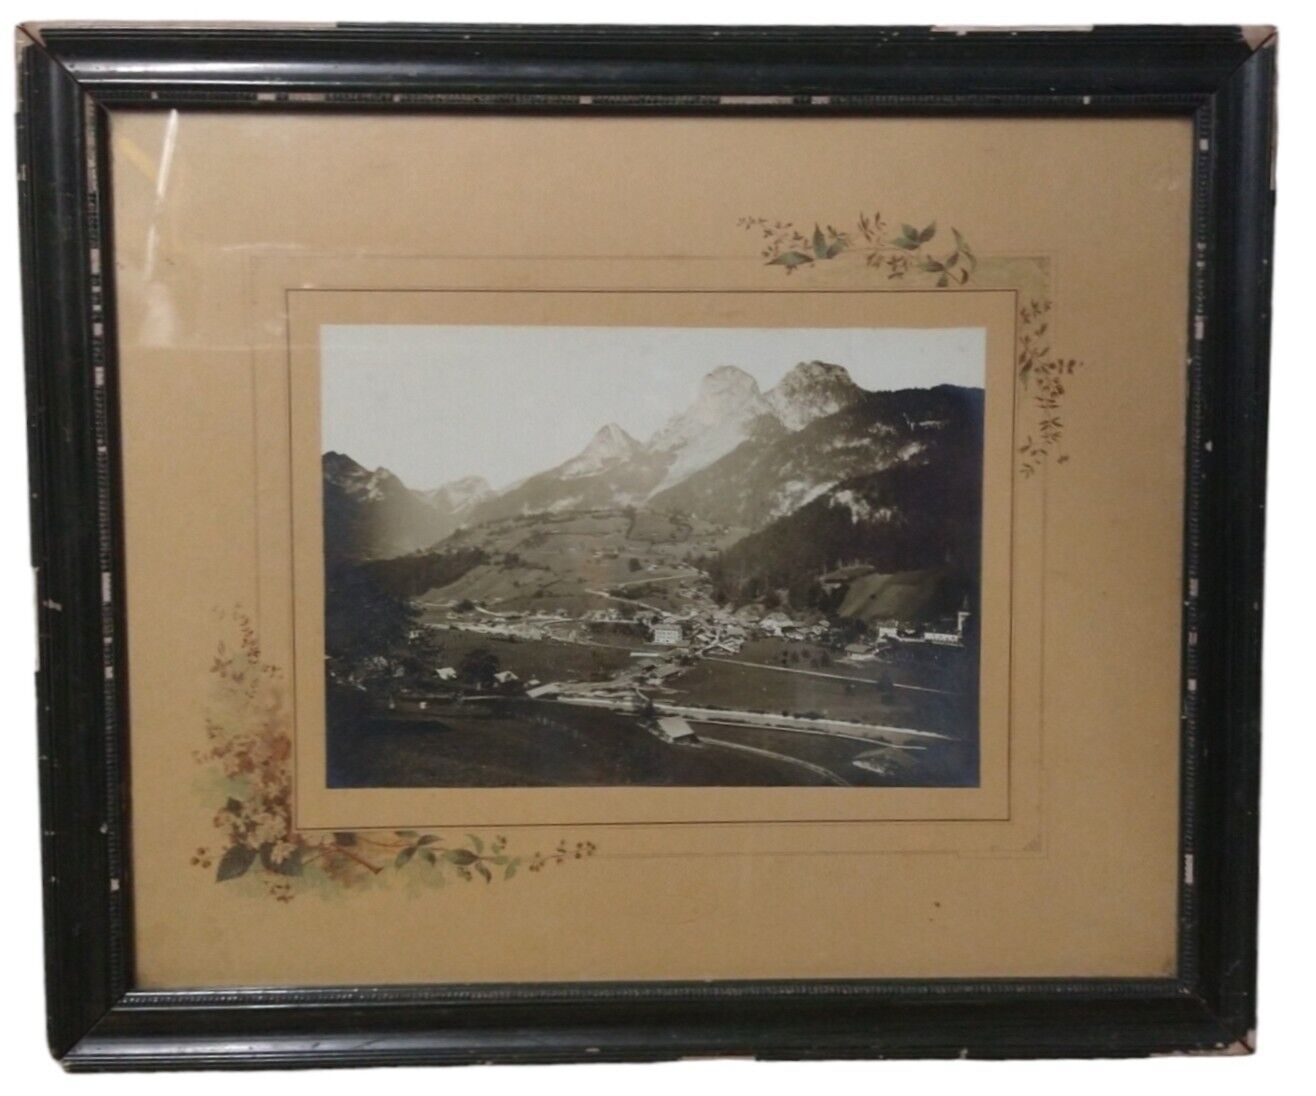 Austrian Alps Village B&W Photograph Weissenbach am Lech Framed Original 1900